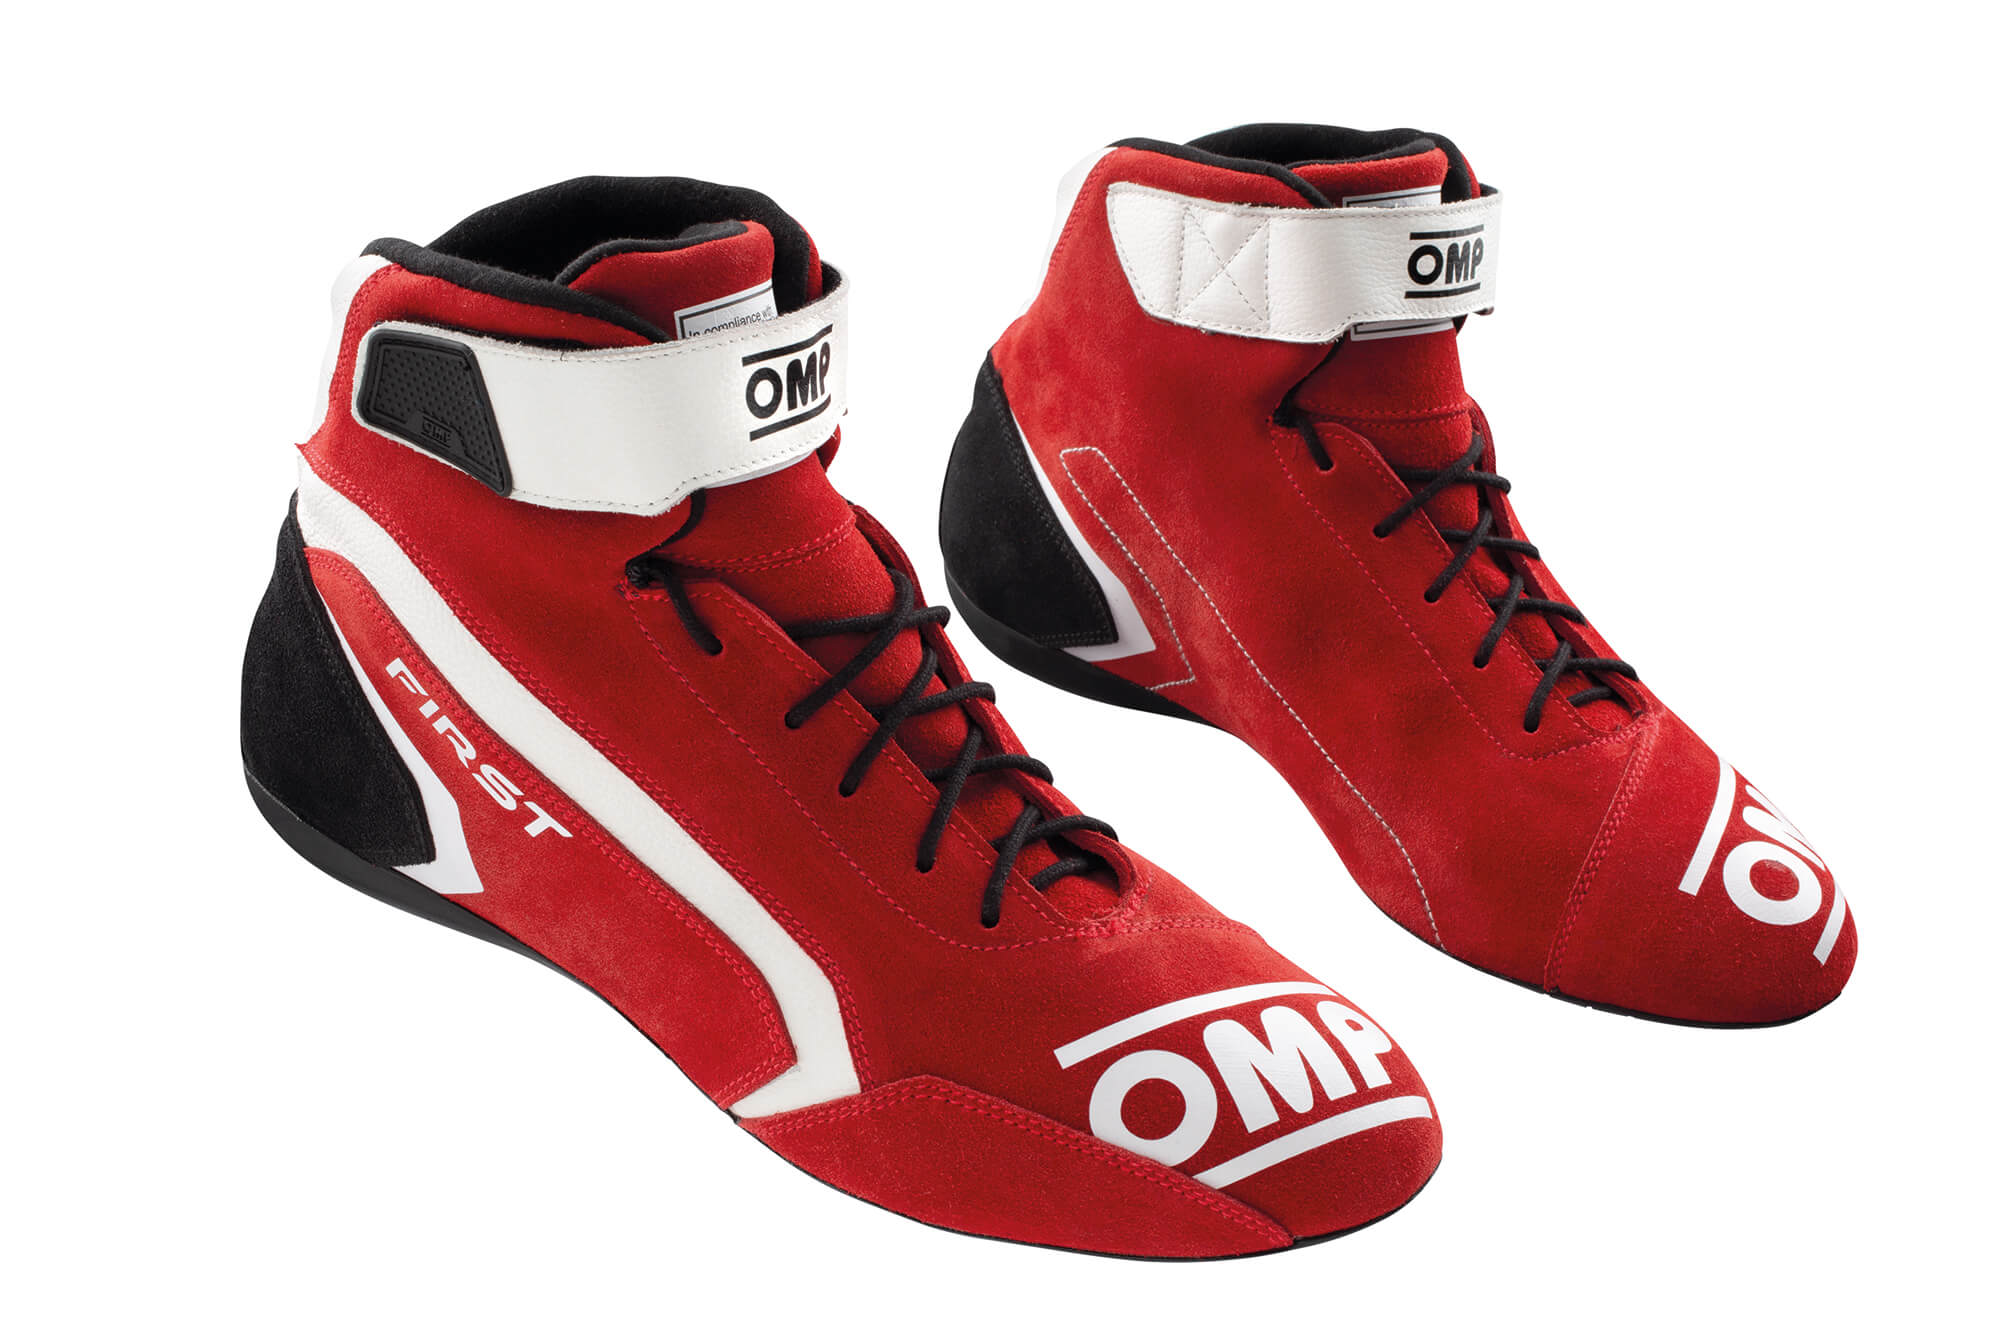 OMP First Race Shoes - Raceline Motorsport Racewear